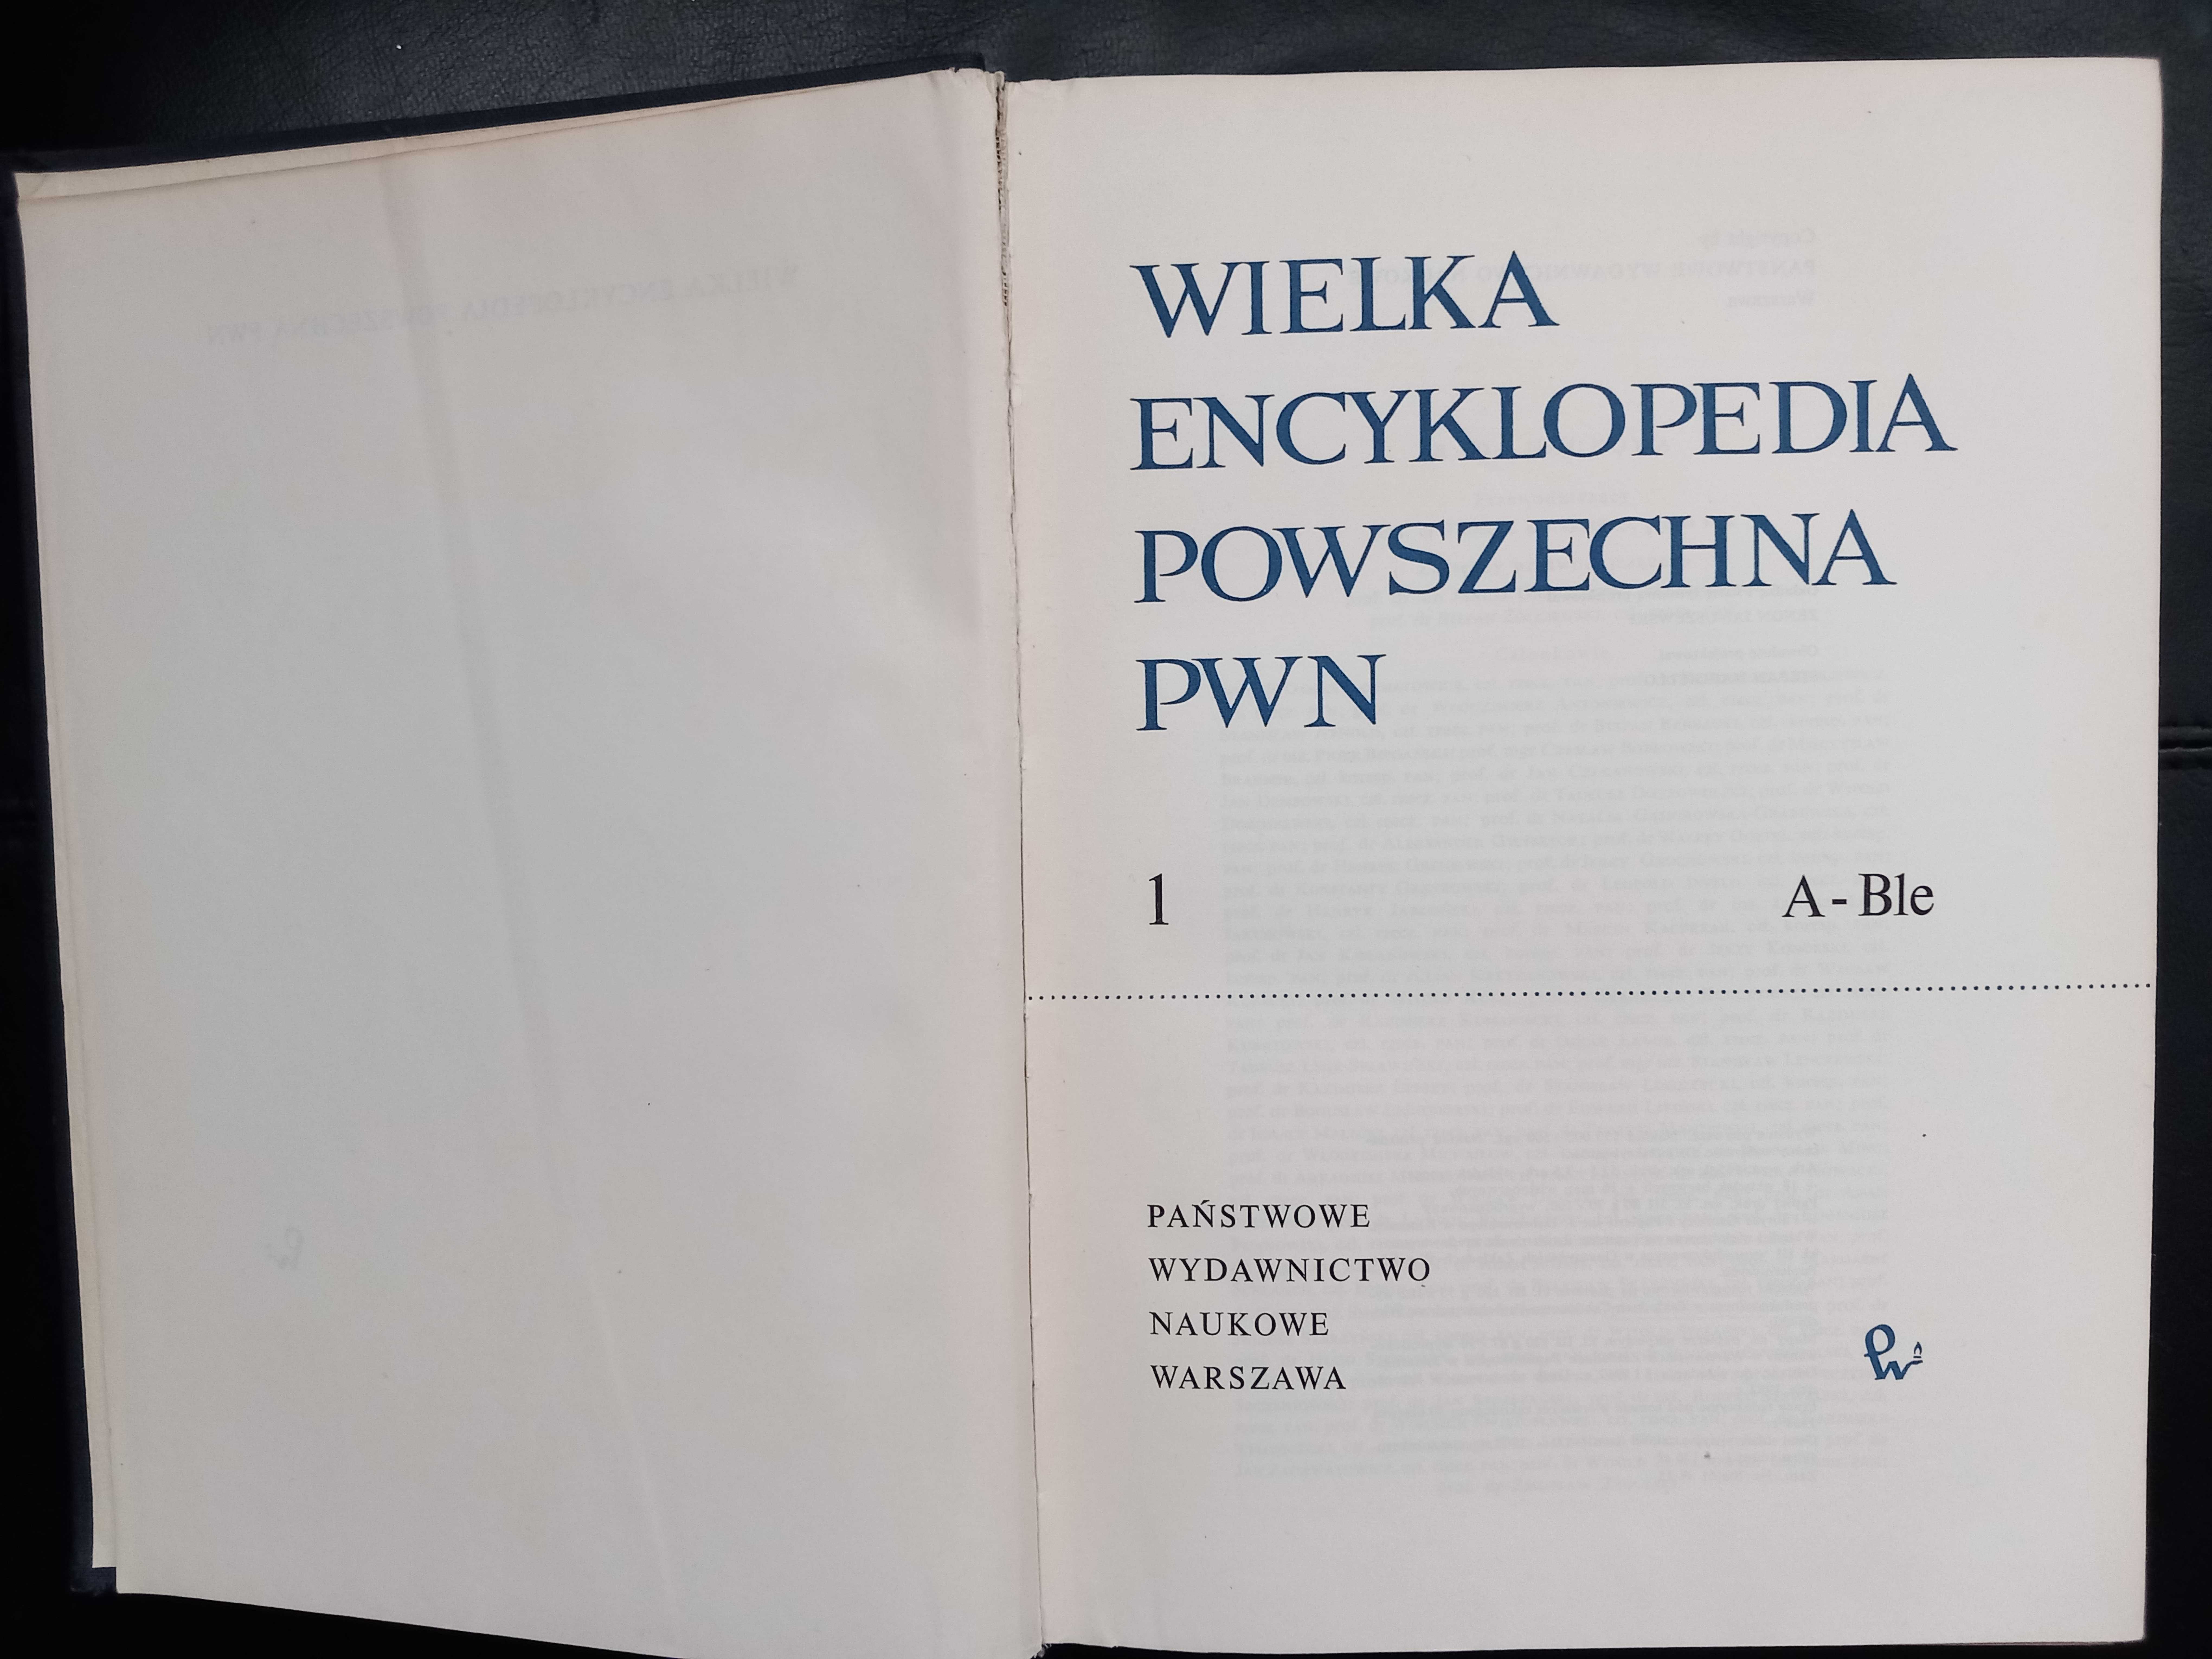 Wielka encyklopedia powszechna PWN.